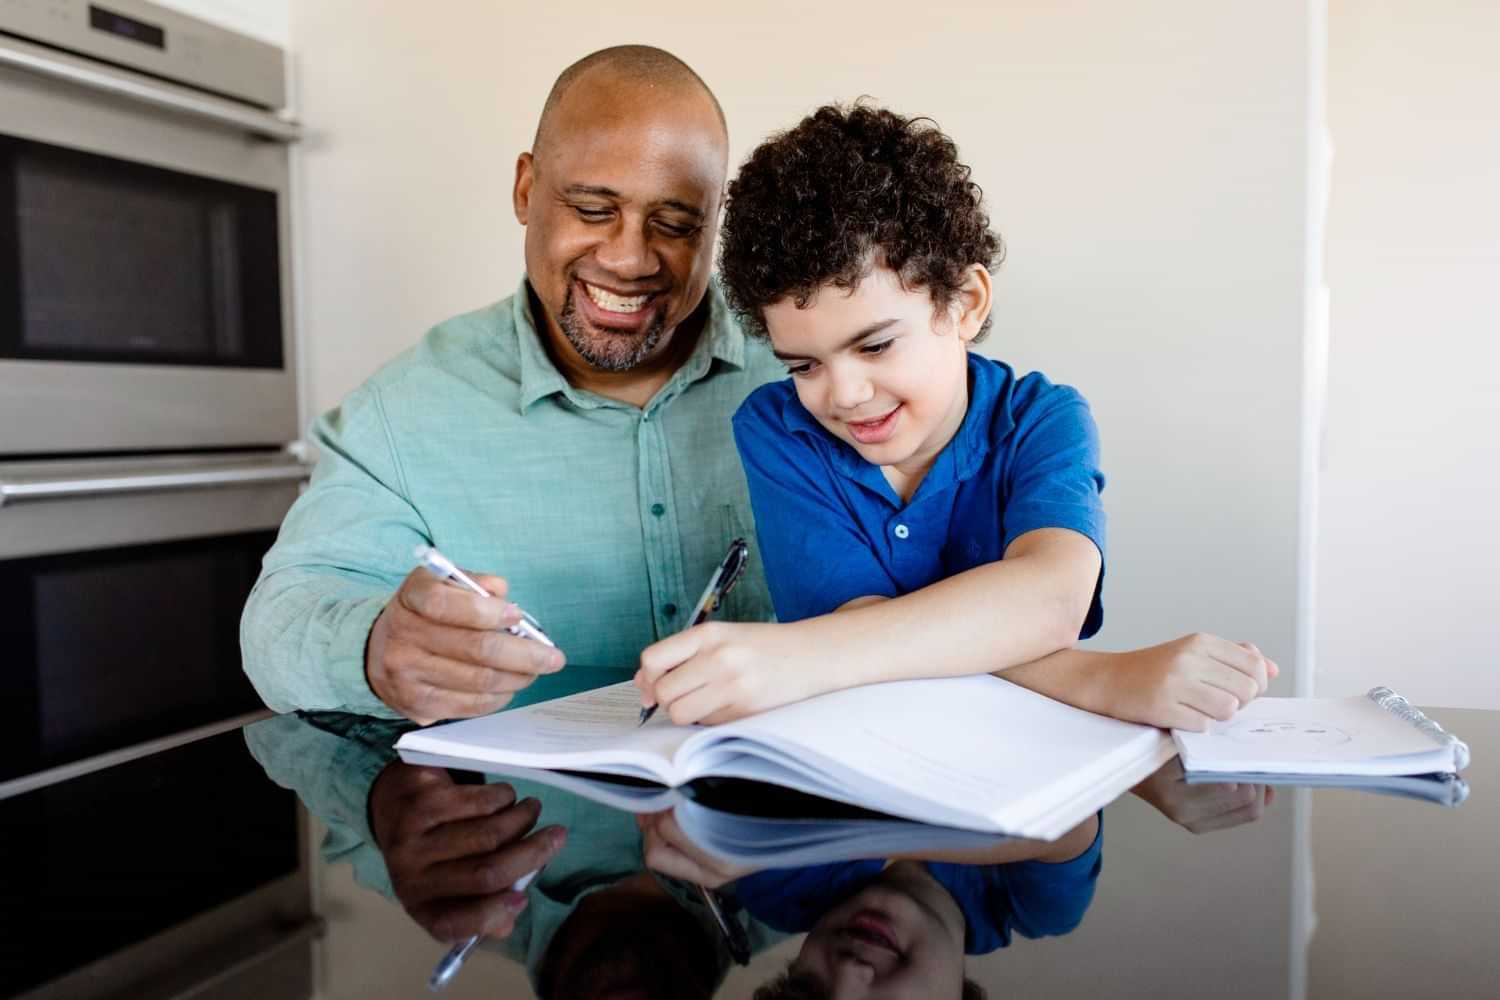  Estudar em casa: veja como incentivar os pequenos 